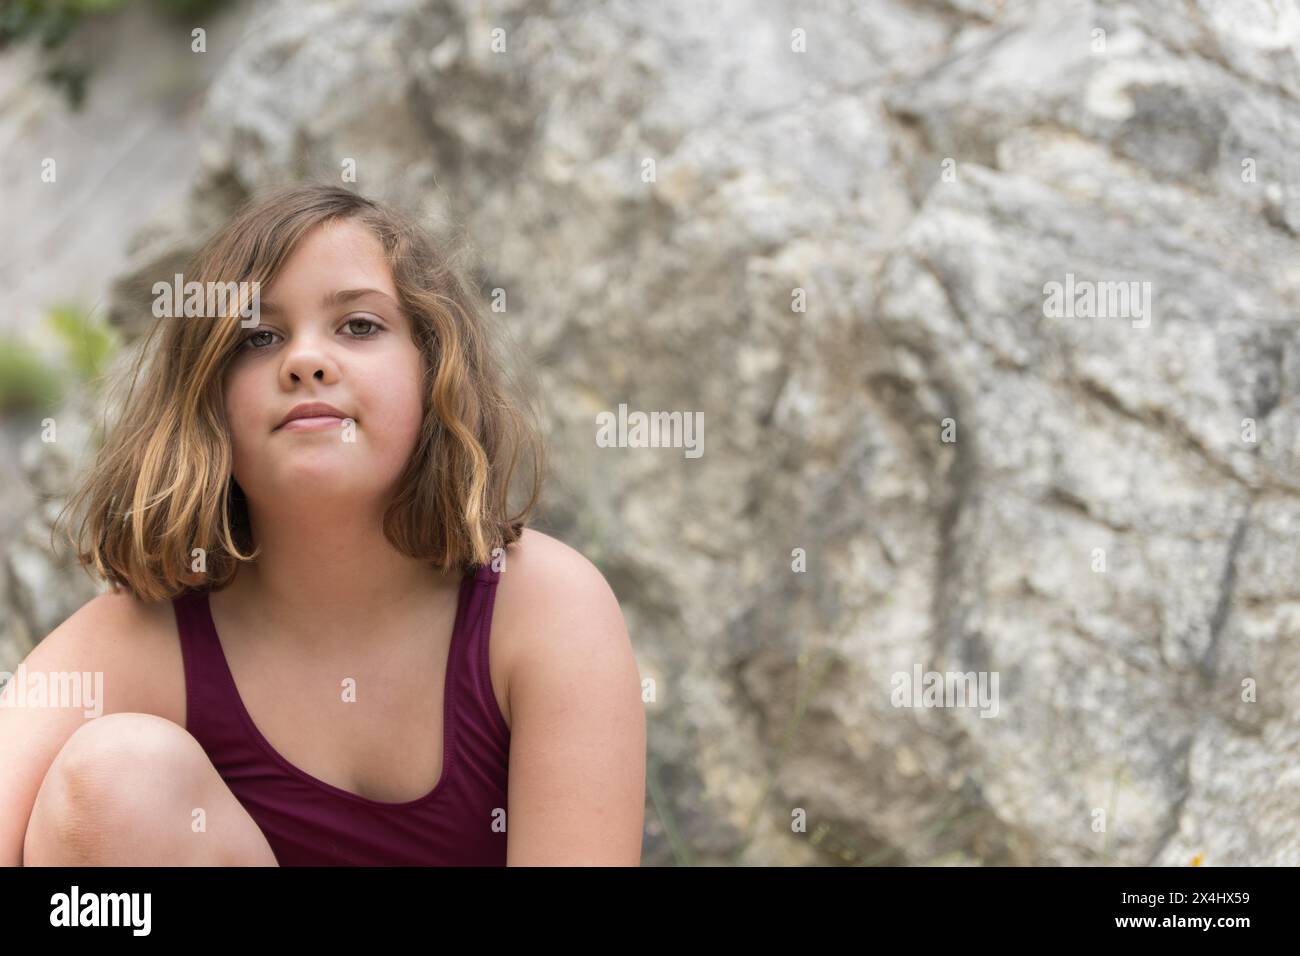 Belle fille en maillot de bain assise sur les rochers regardant la caméra Banque D'Images